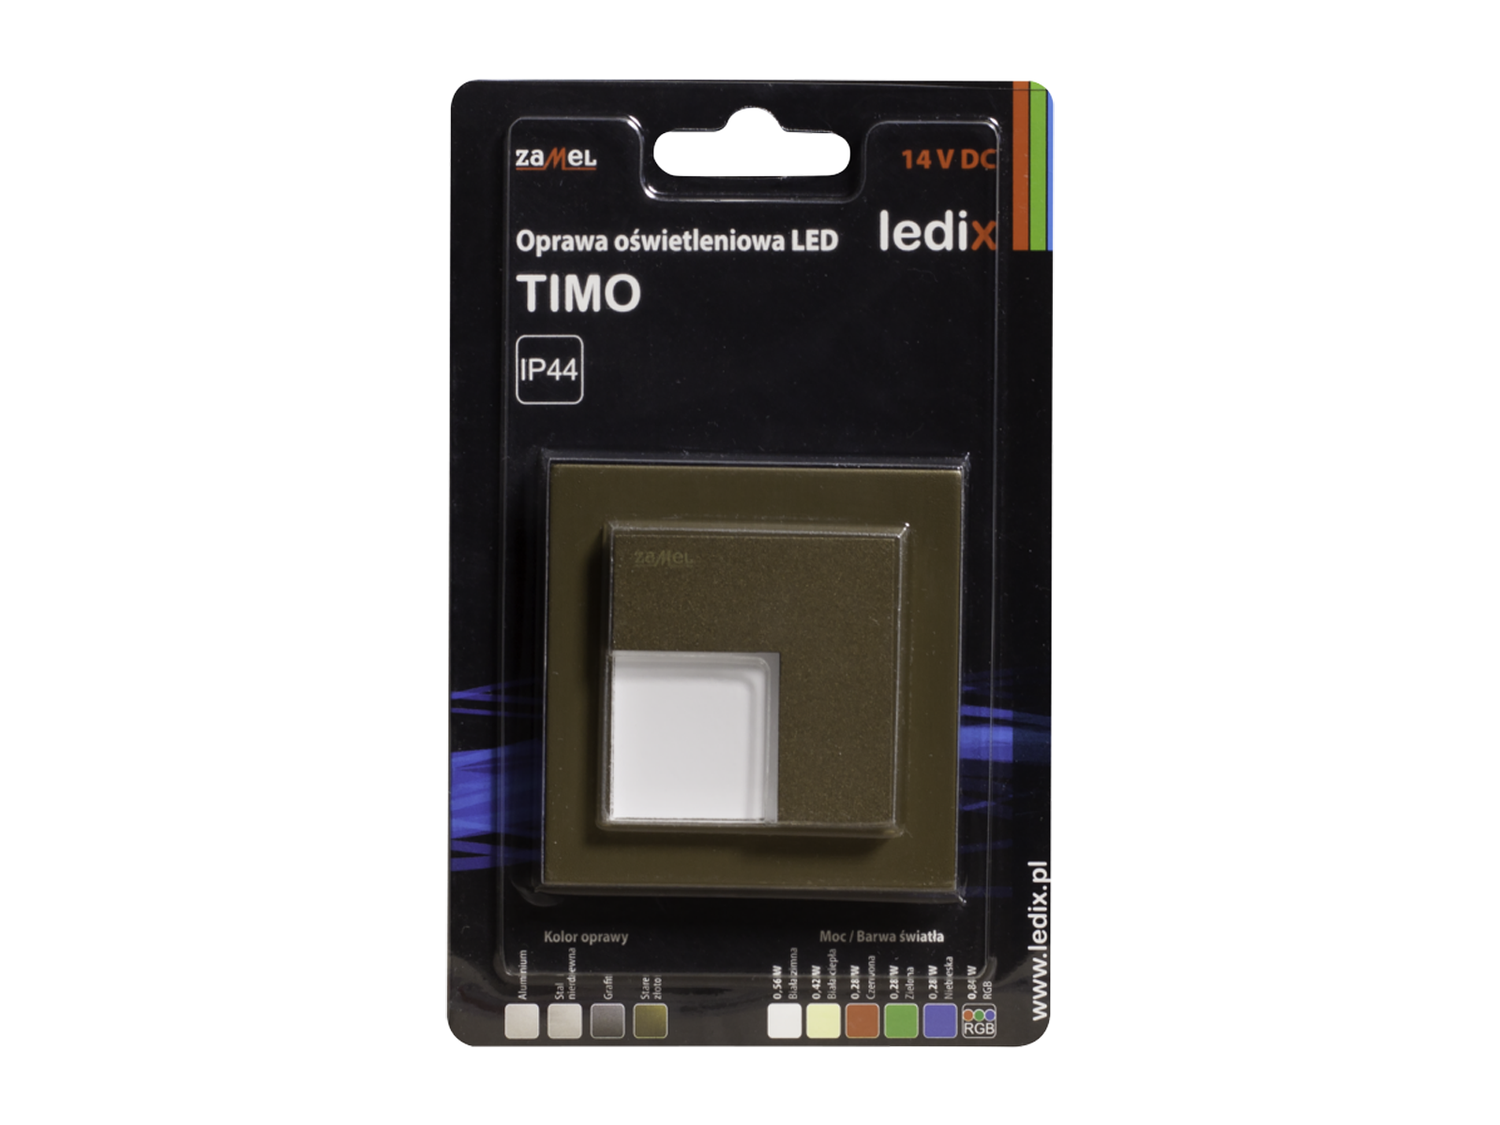 Svítidlo LED do krabice LEDIX TIMO 14V DC, zlatá patina, teplá bílá, IP44